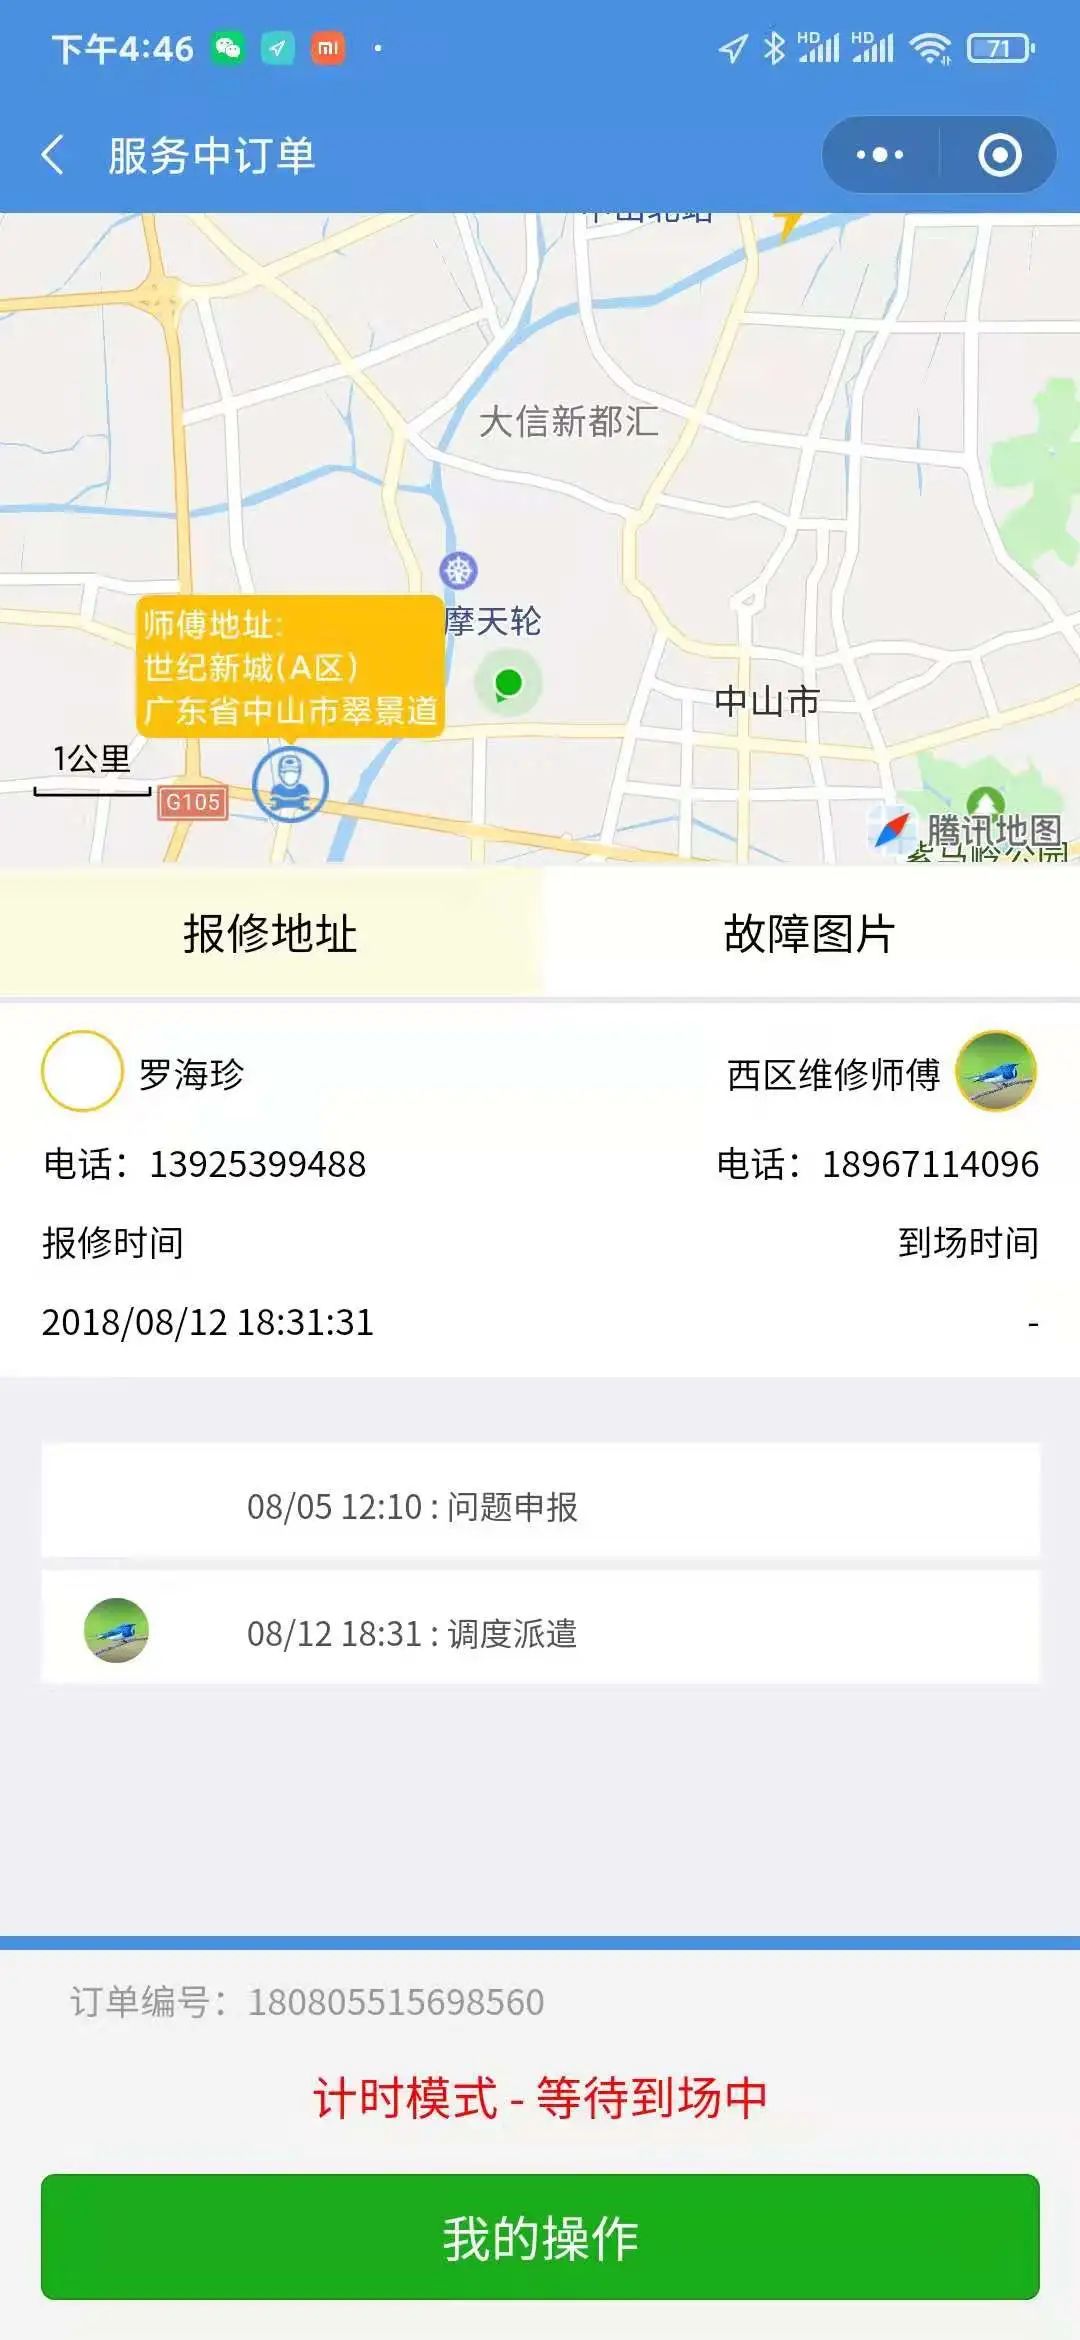 杭州小土网络科技有限公司